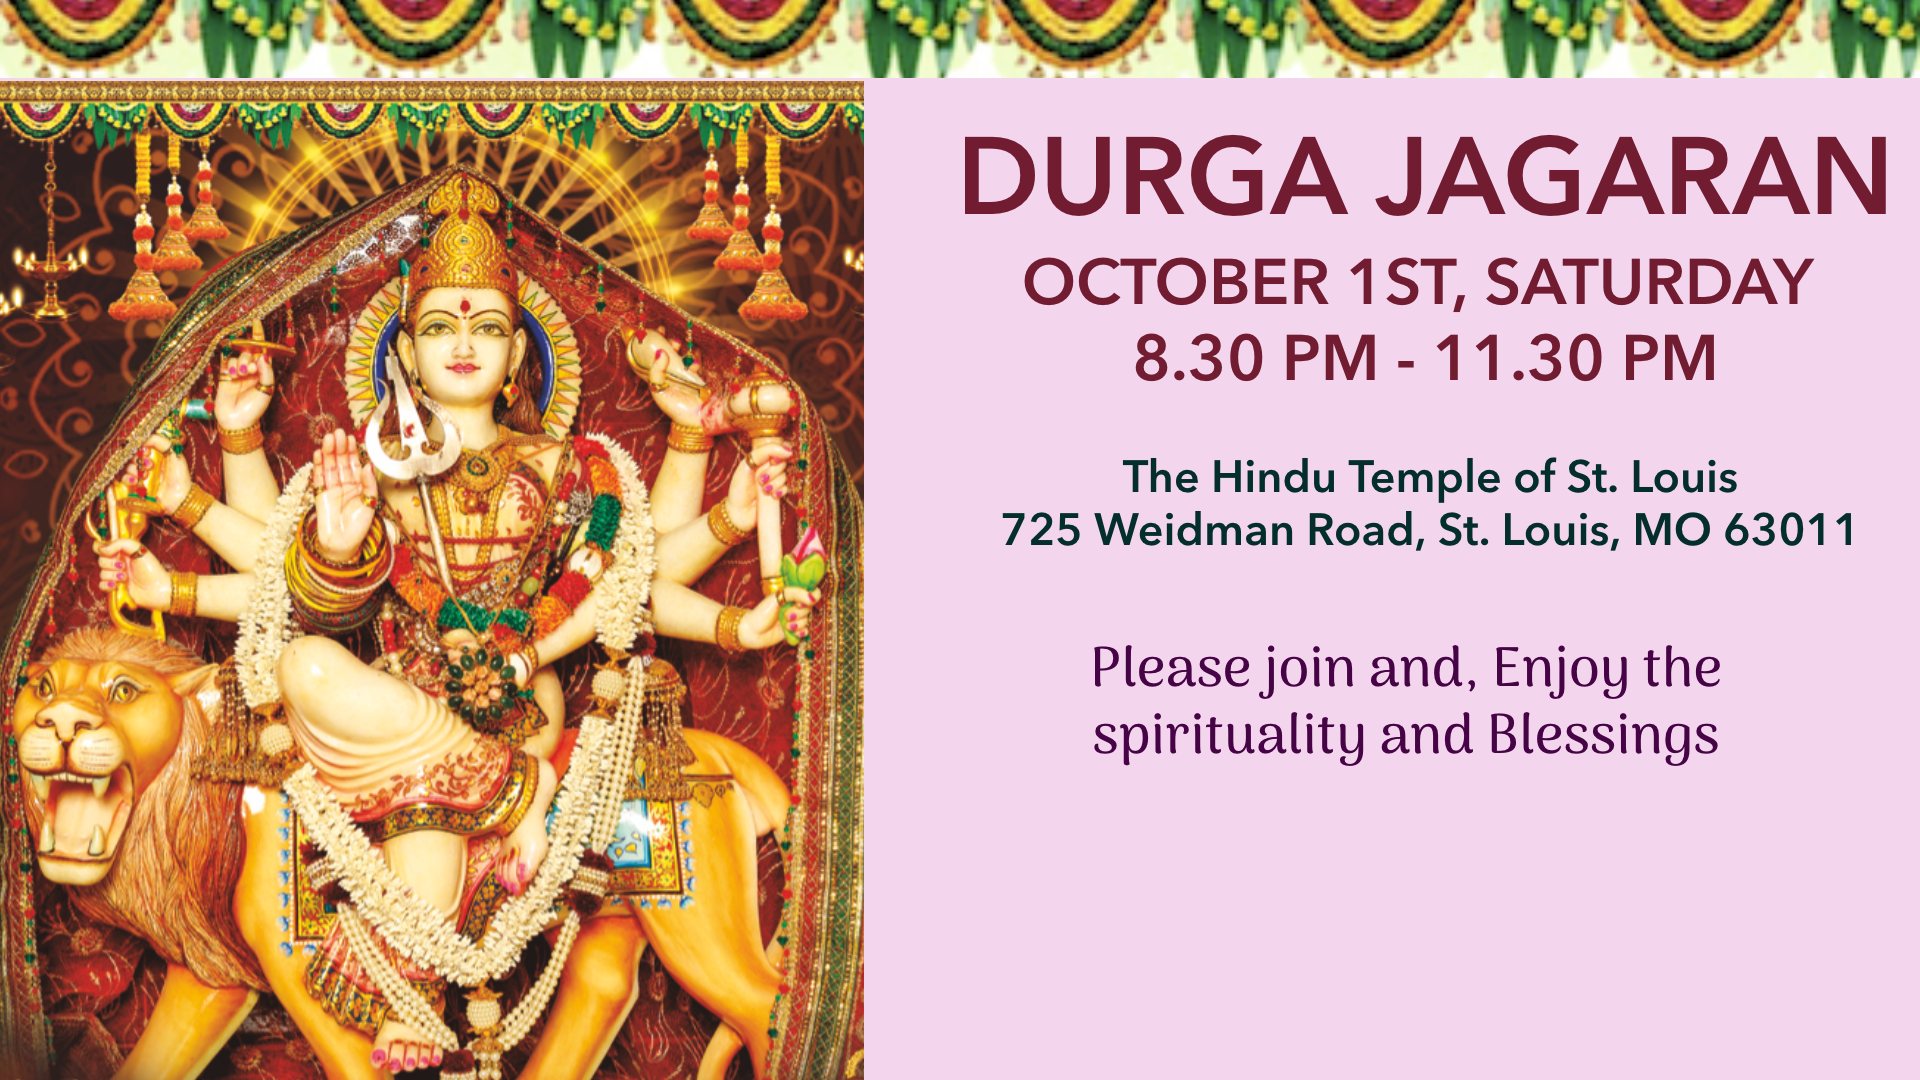 Durga Jagaran @ 10/01, 8.30 PM